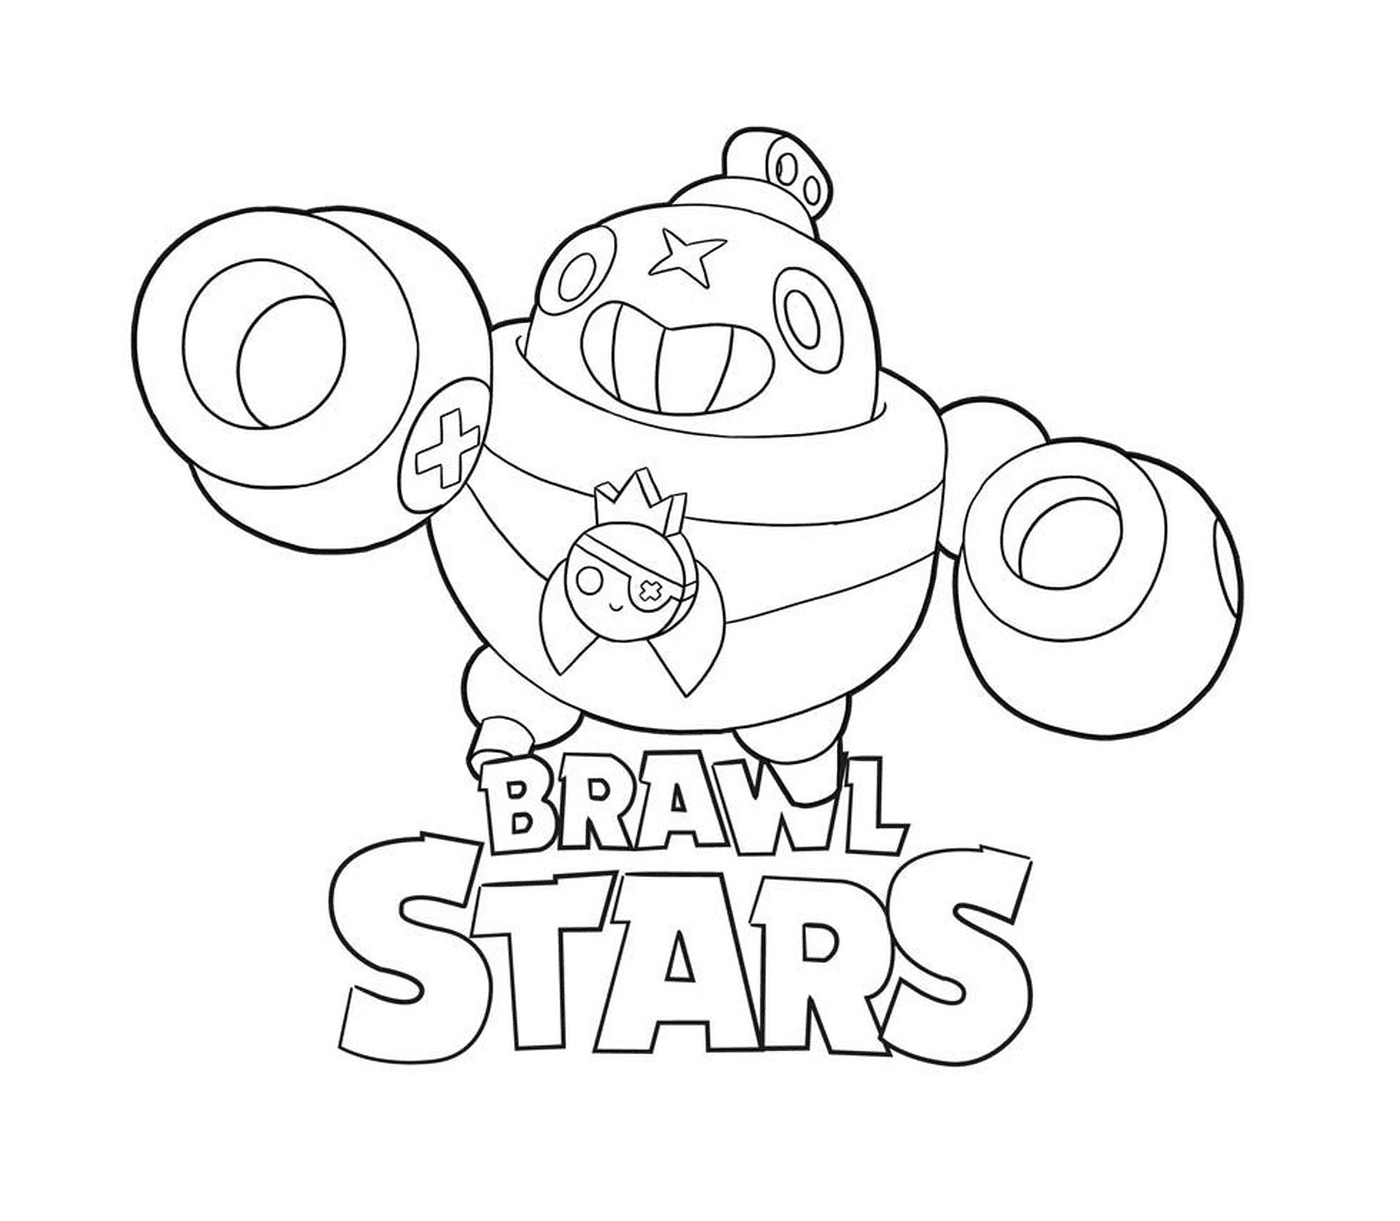  一个来自Browl Stars的字符, 名为“ 滴” 的字符 